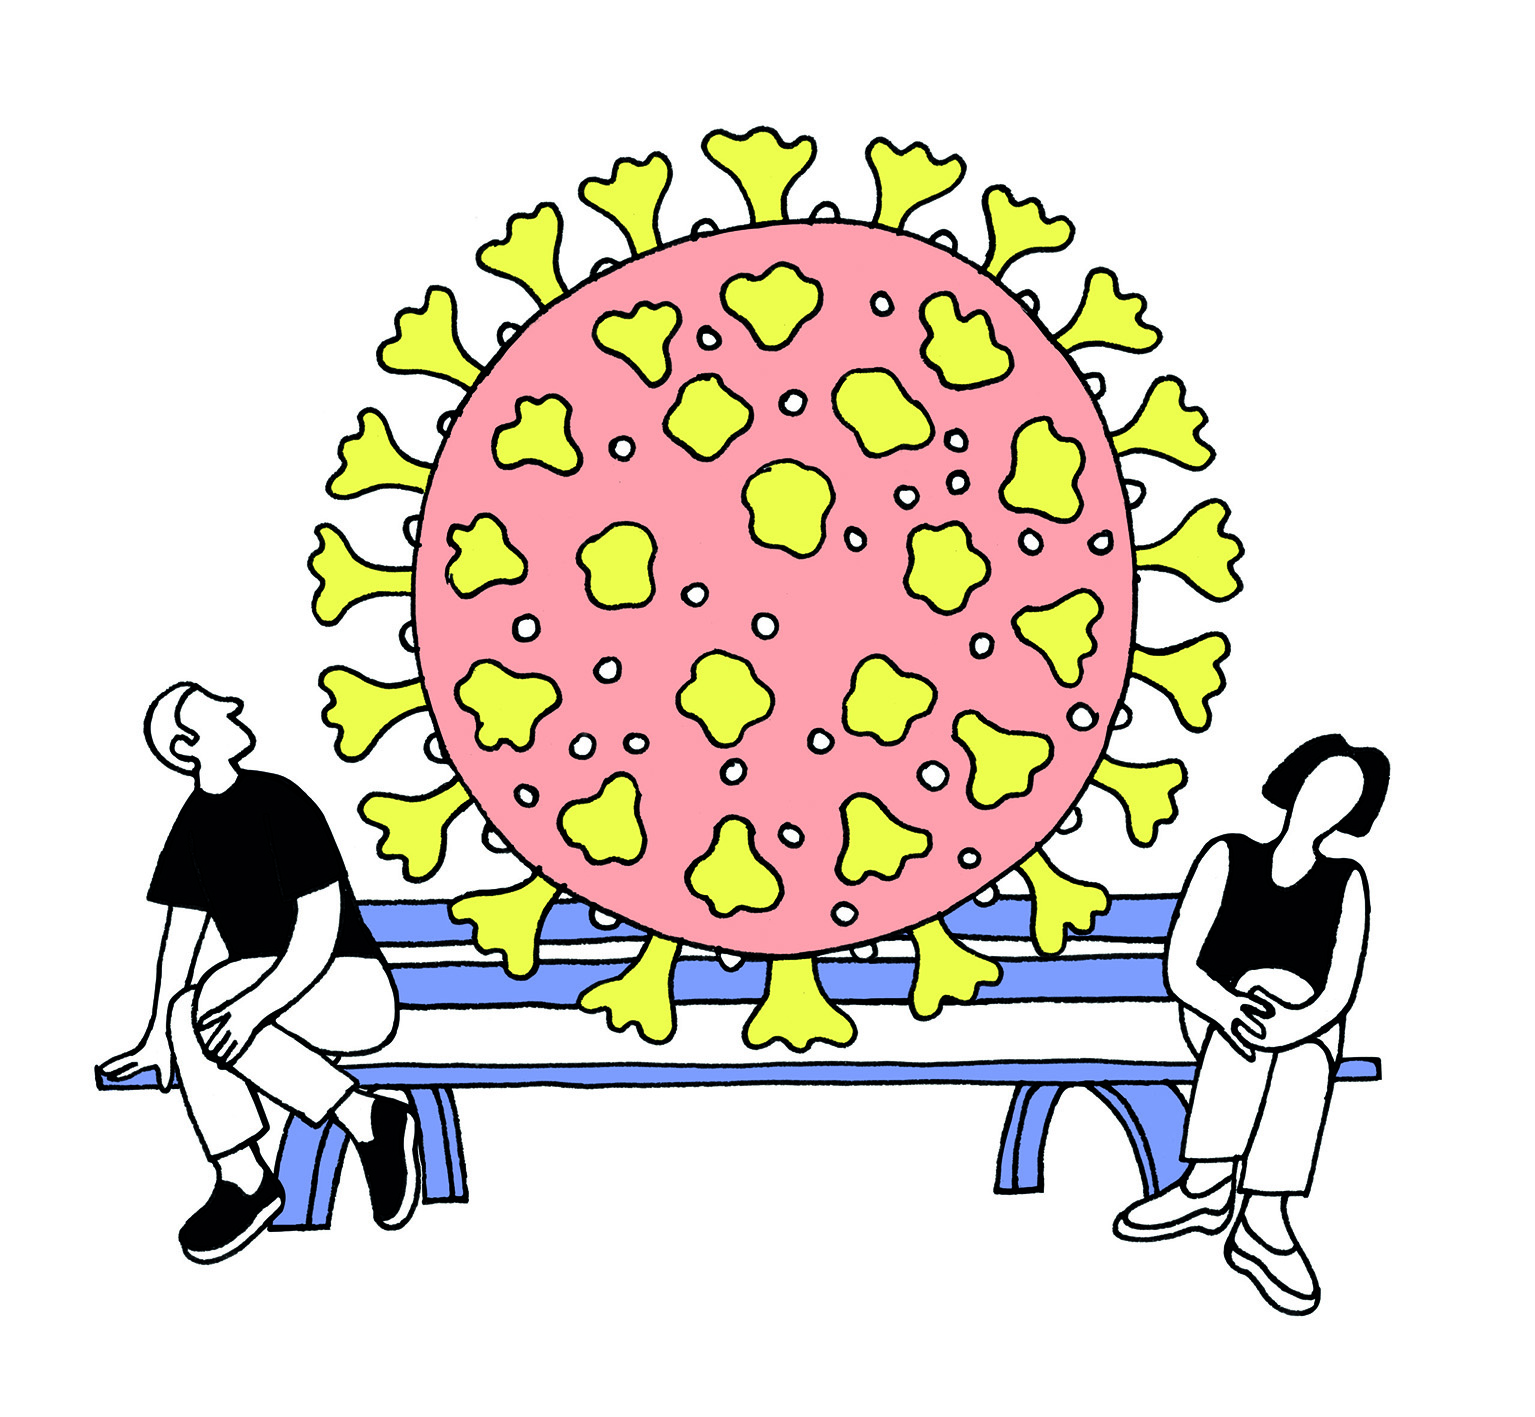 Le dessin d'un virus sépare deux personnes assises sur un banc.